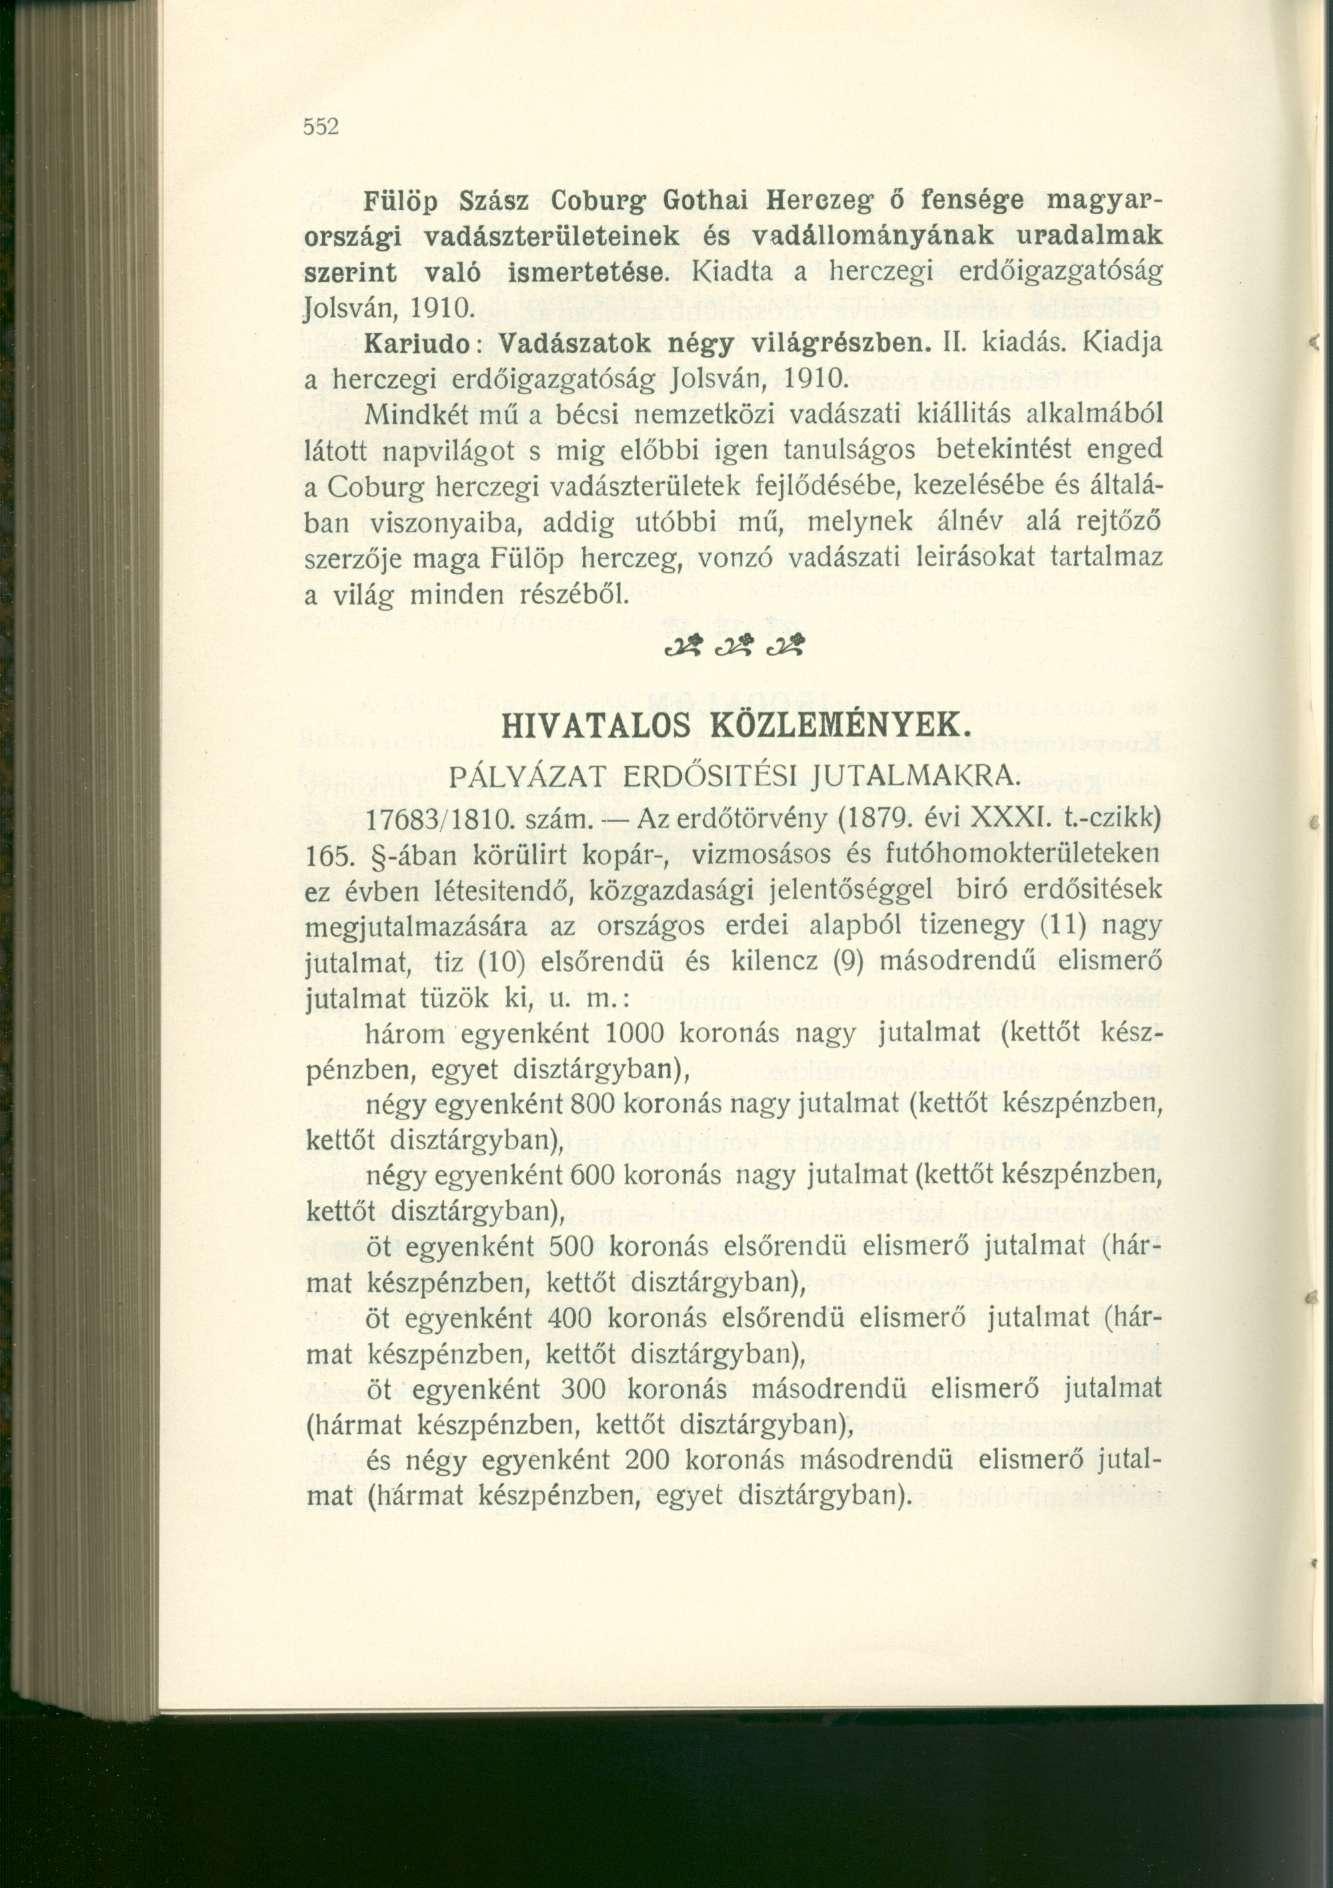 Fülöp Szász Coburg Gothai Herczeg ő fensége magyarországi vadászterületeinek és vadállományának uradalmak szerint való ismertetése. Kiadta a berezegi erdőigazgatóság Jolsván, 1910.